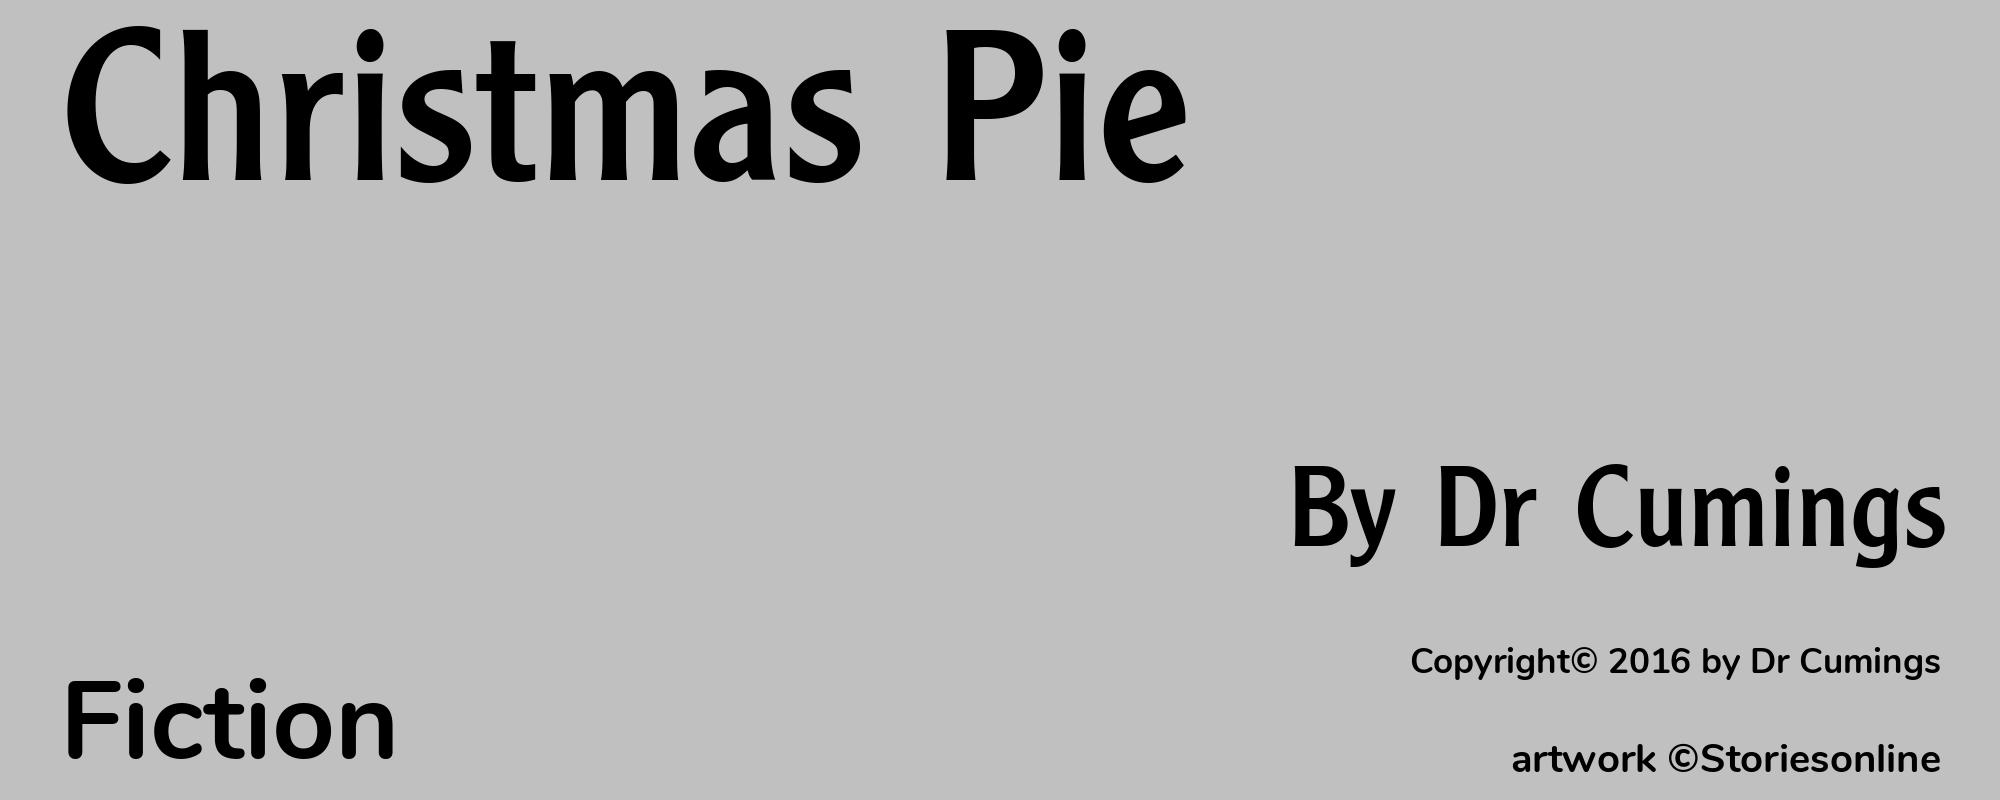 Christmas Pie - Cover